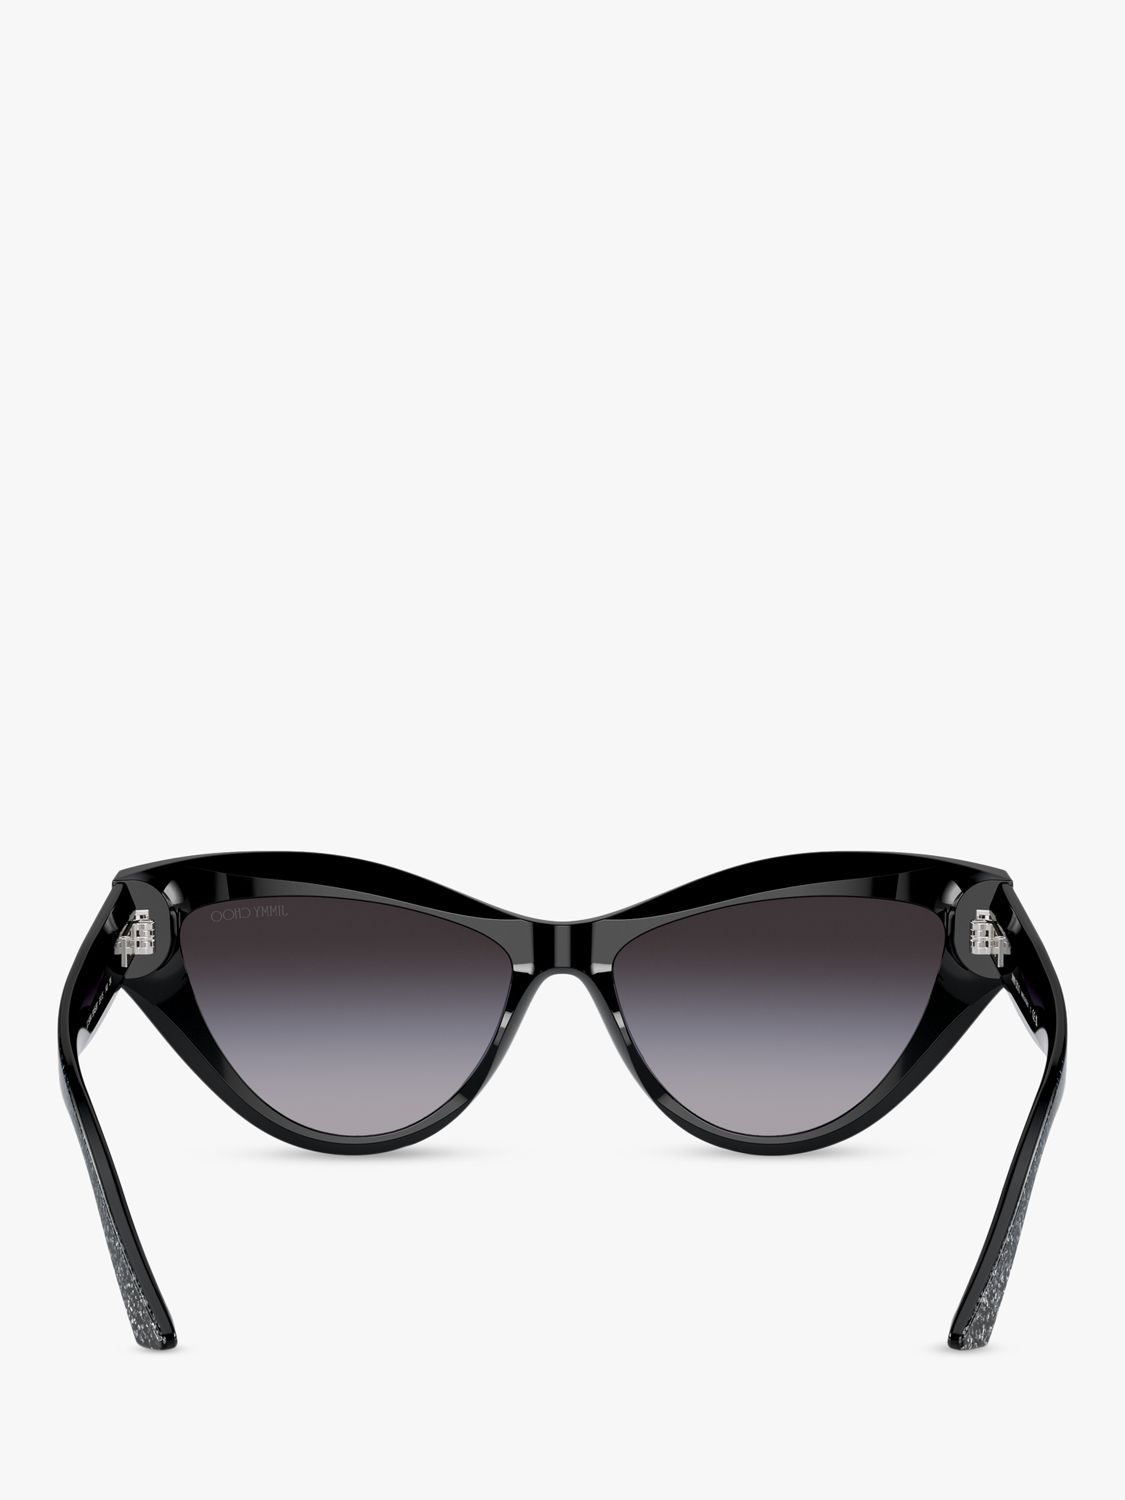 Buy Jimmy Choo JC5004 Women's Cat's Eye Sunglasses, Black Glitter/Blue Online at johnlewis.com